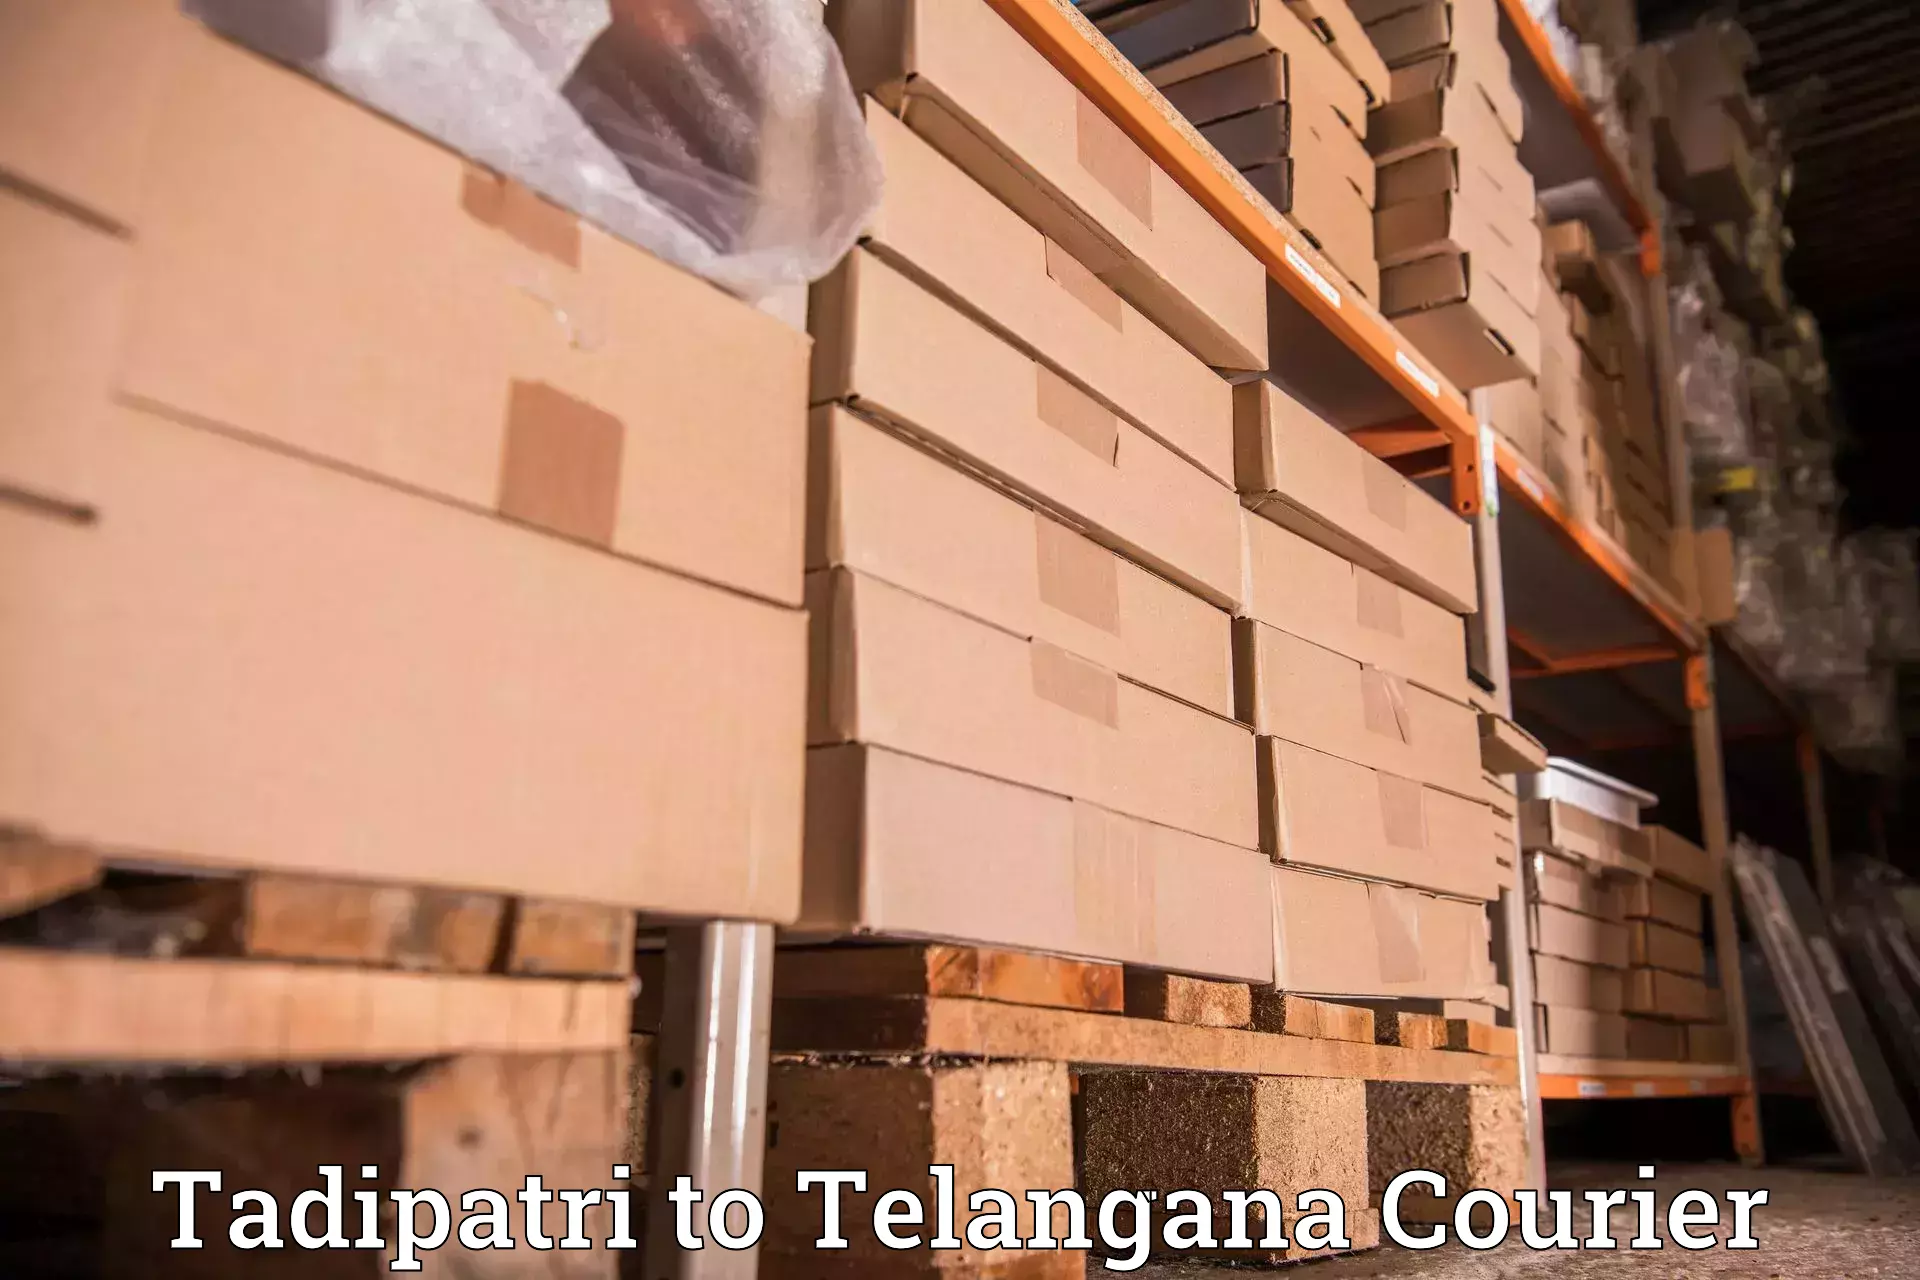 24/7 courier service Tadipatri to Wanaparthy